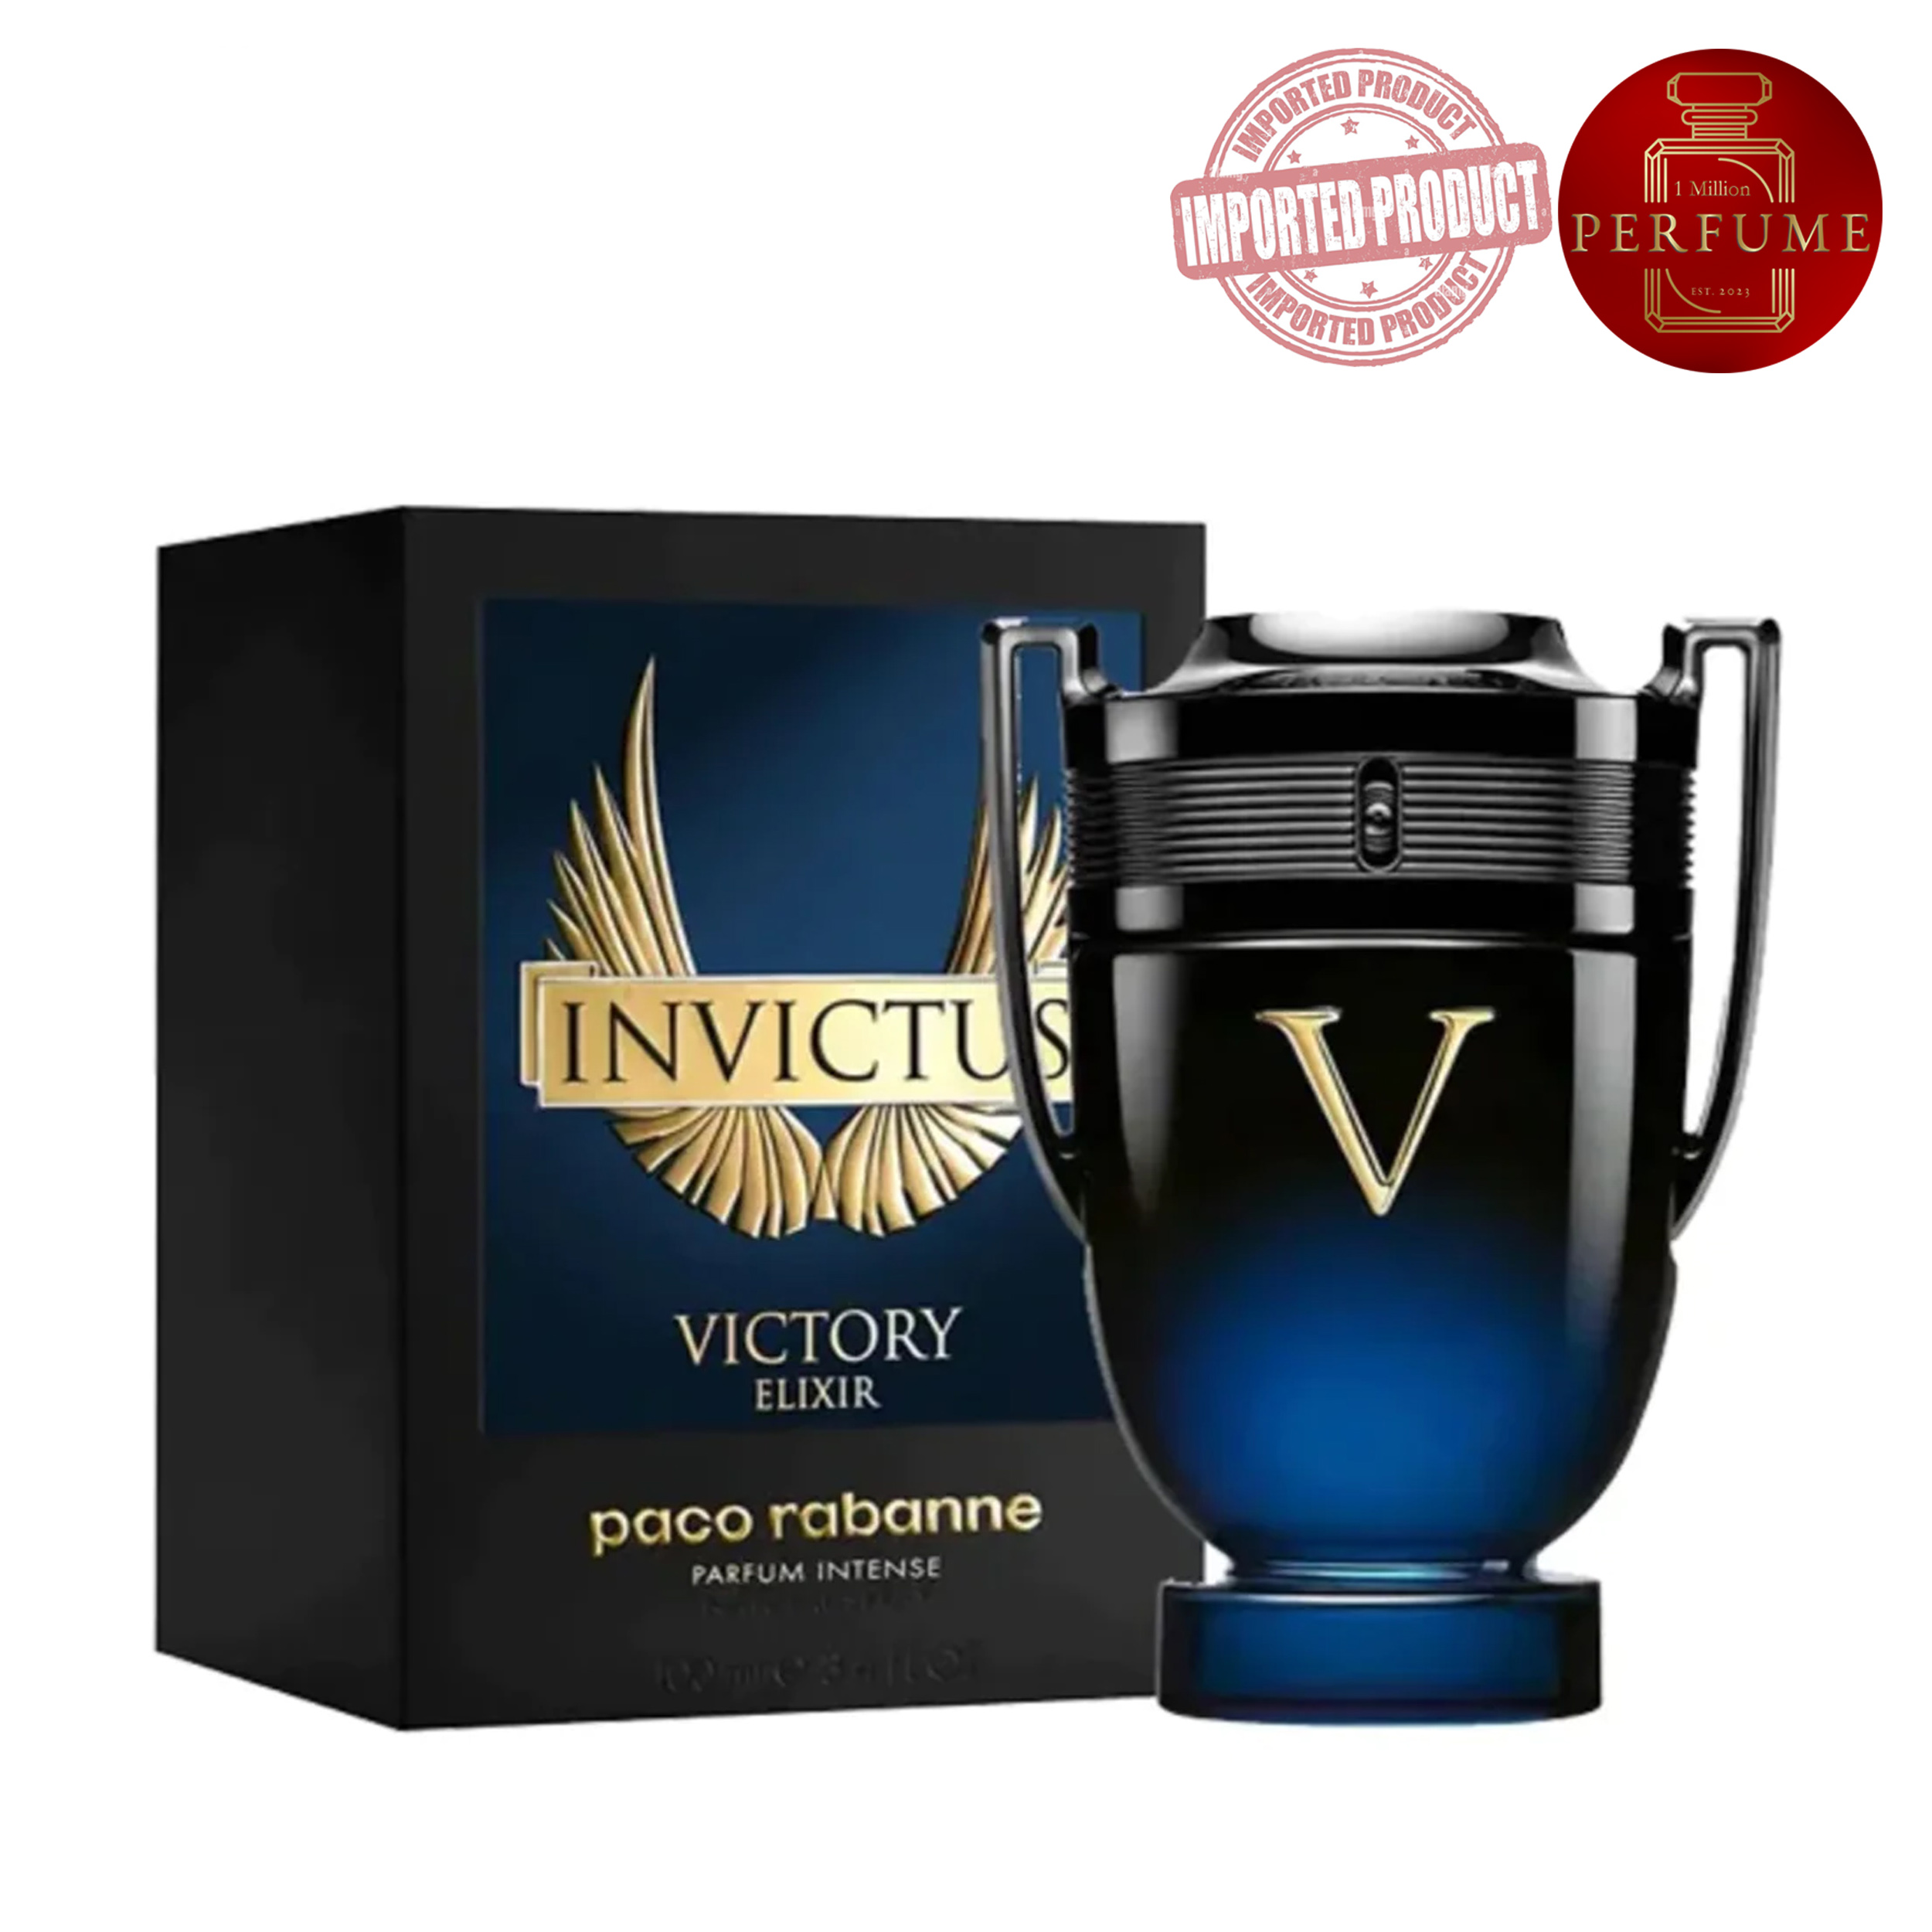 Invictus Victory Elixir Paco Rabanne (Replica Con Fragancia Importada)- Hombre